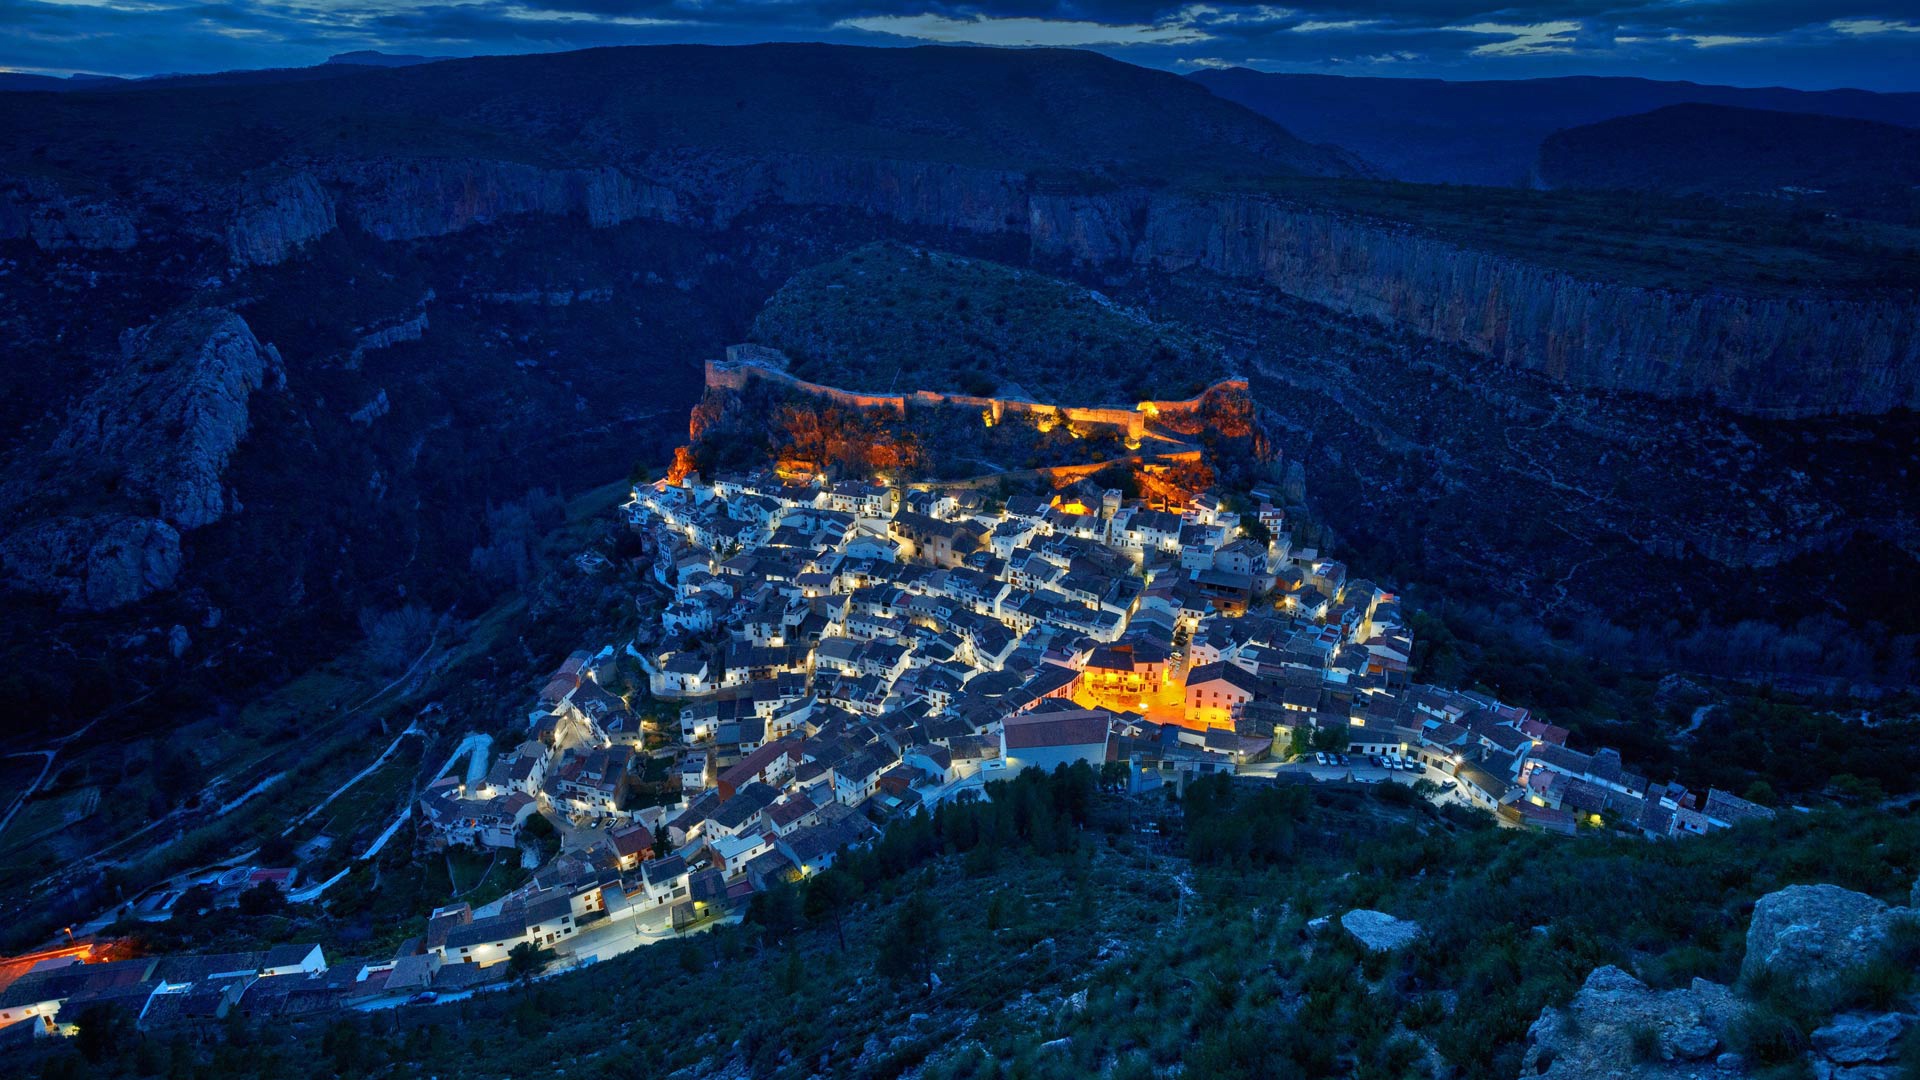 Www bing com image. Chulilla Испания. Ночь с горах Испании. Дома в скалах. Изображение Bing.